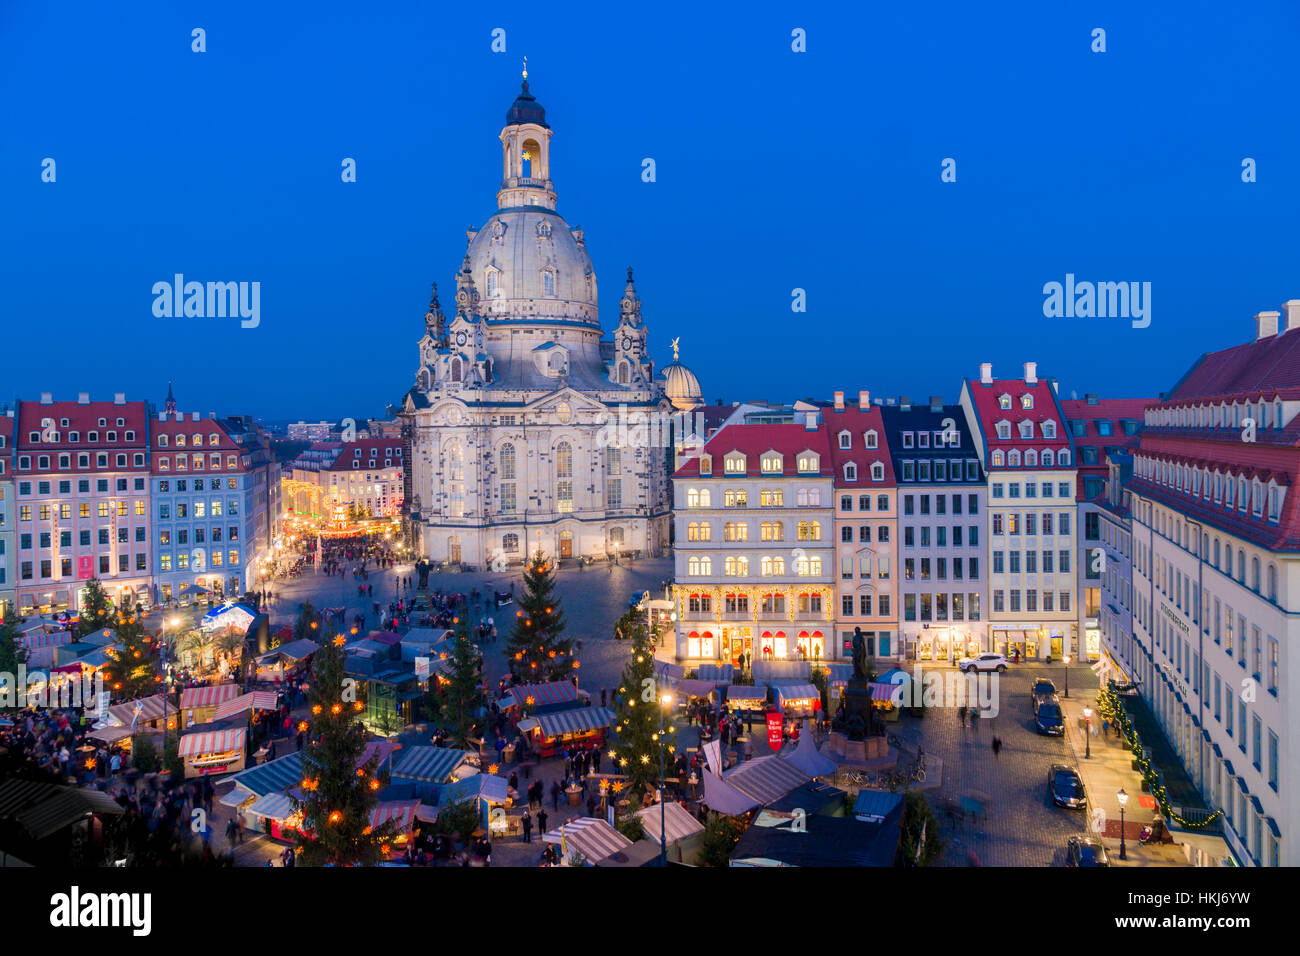 Storico in stile rinascimentale con il mercatino di Natale a Neumarkt davanti alla chiesa di Nostra Signora di Dresda, Sassonia, Germania Foto Stock